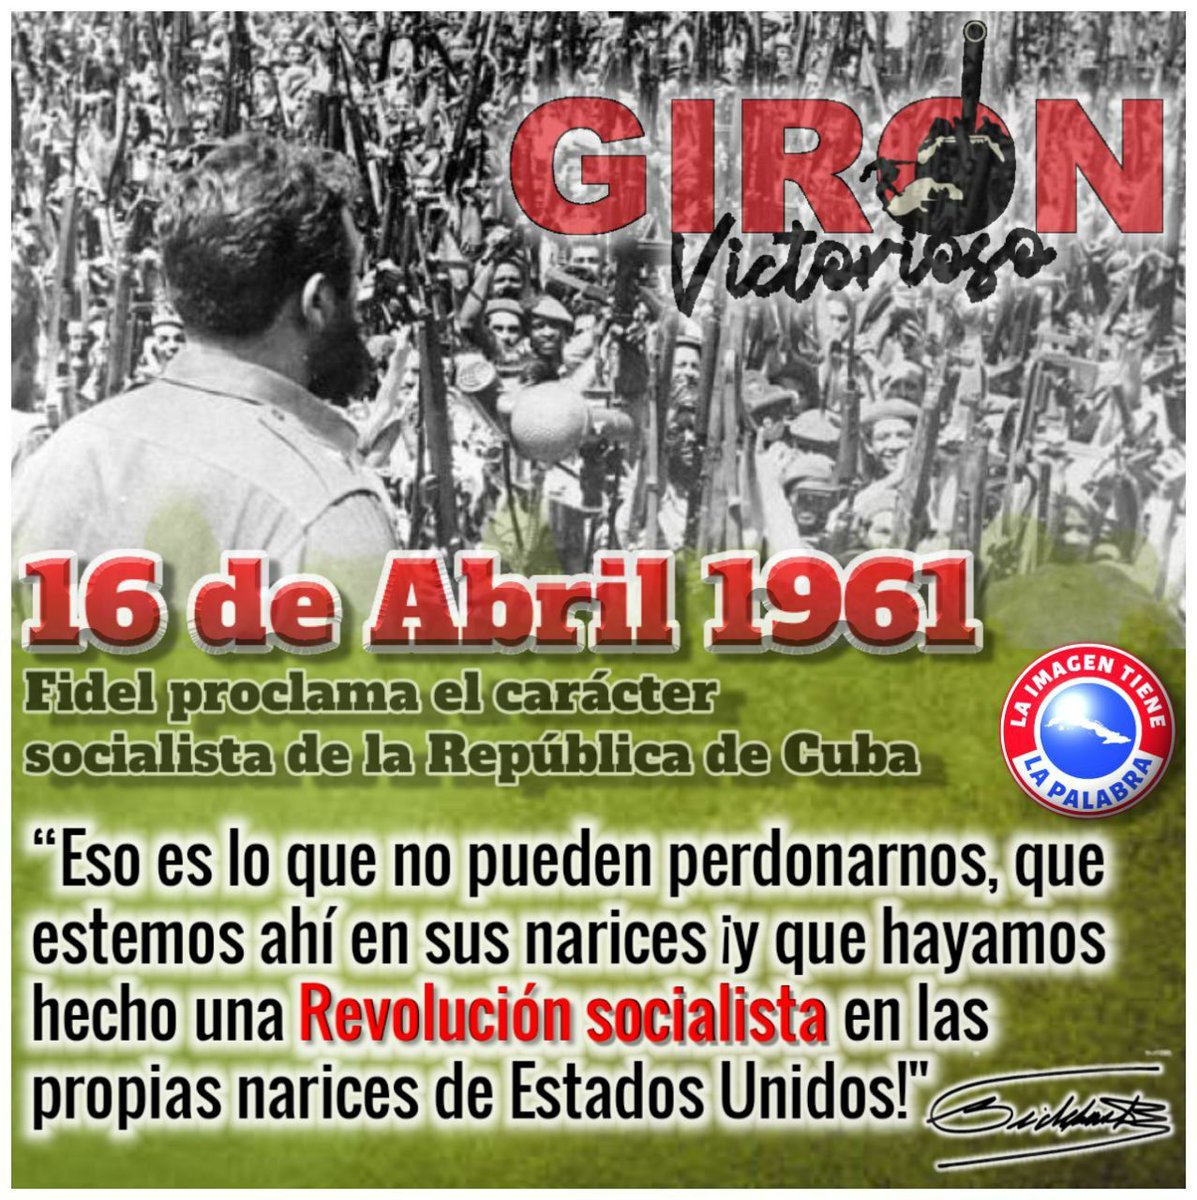 Proclamación del Carácter Socialista de la Revolución Cubana #GirónVictorioso #ContinuamosPaLante